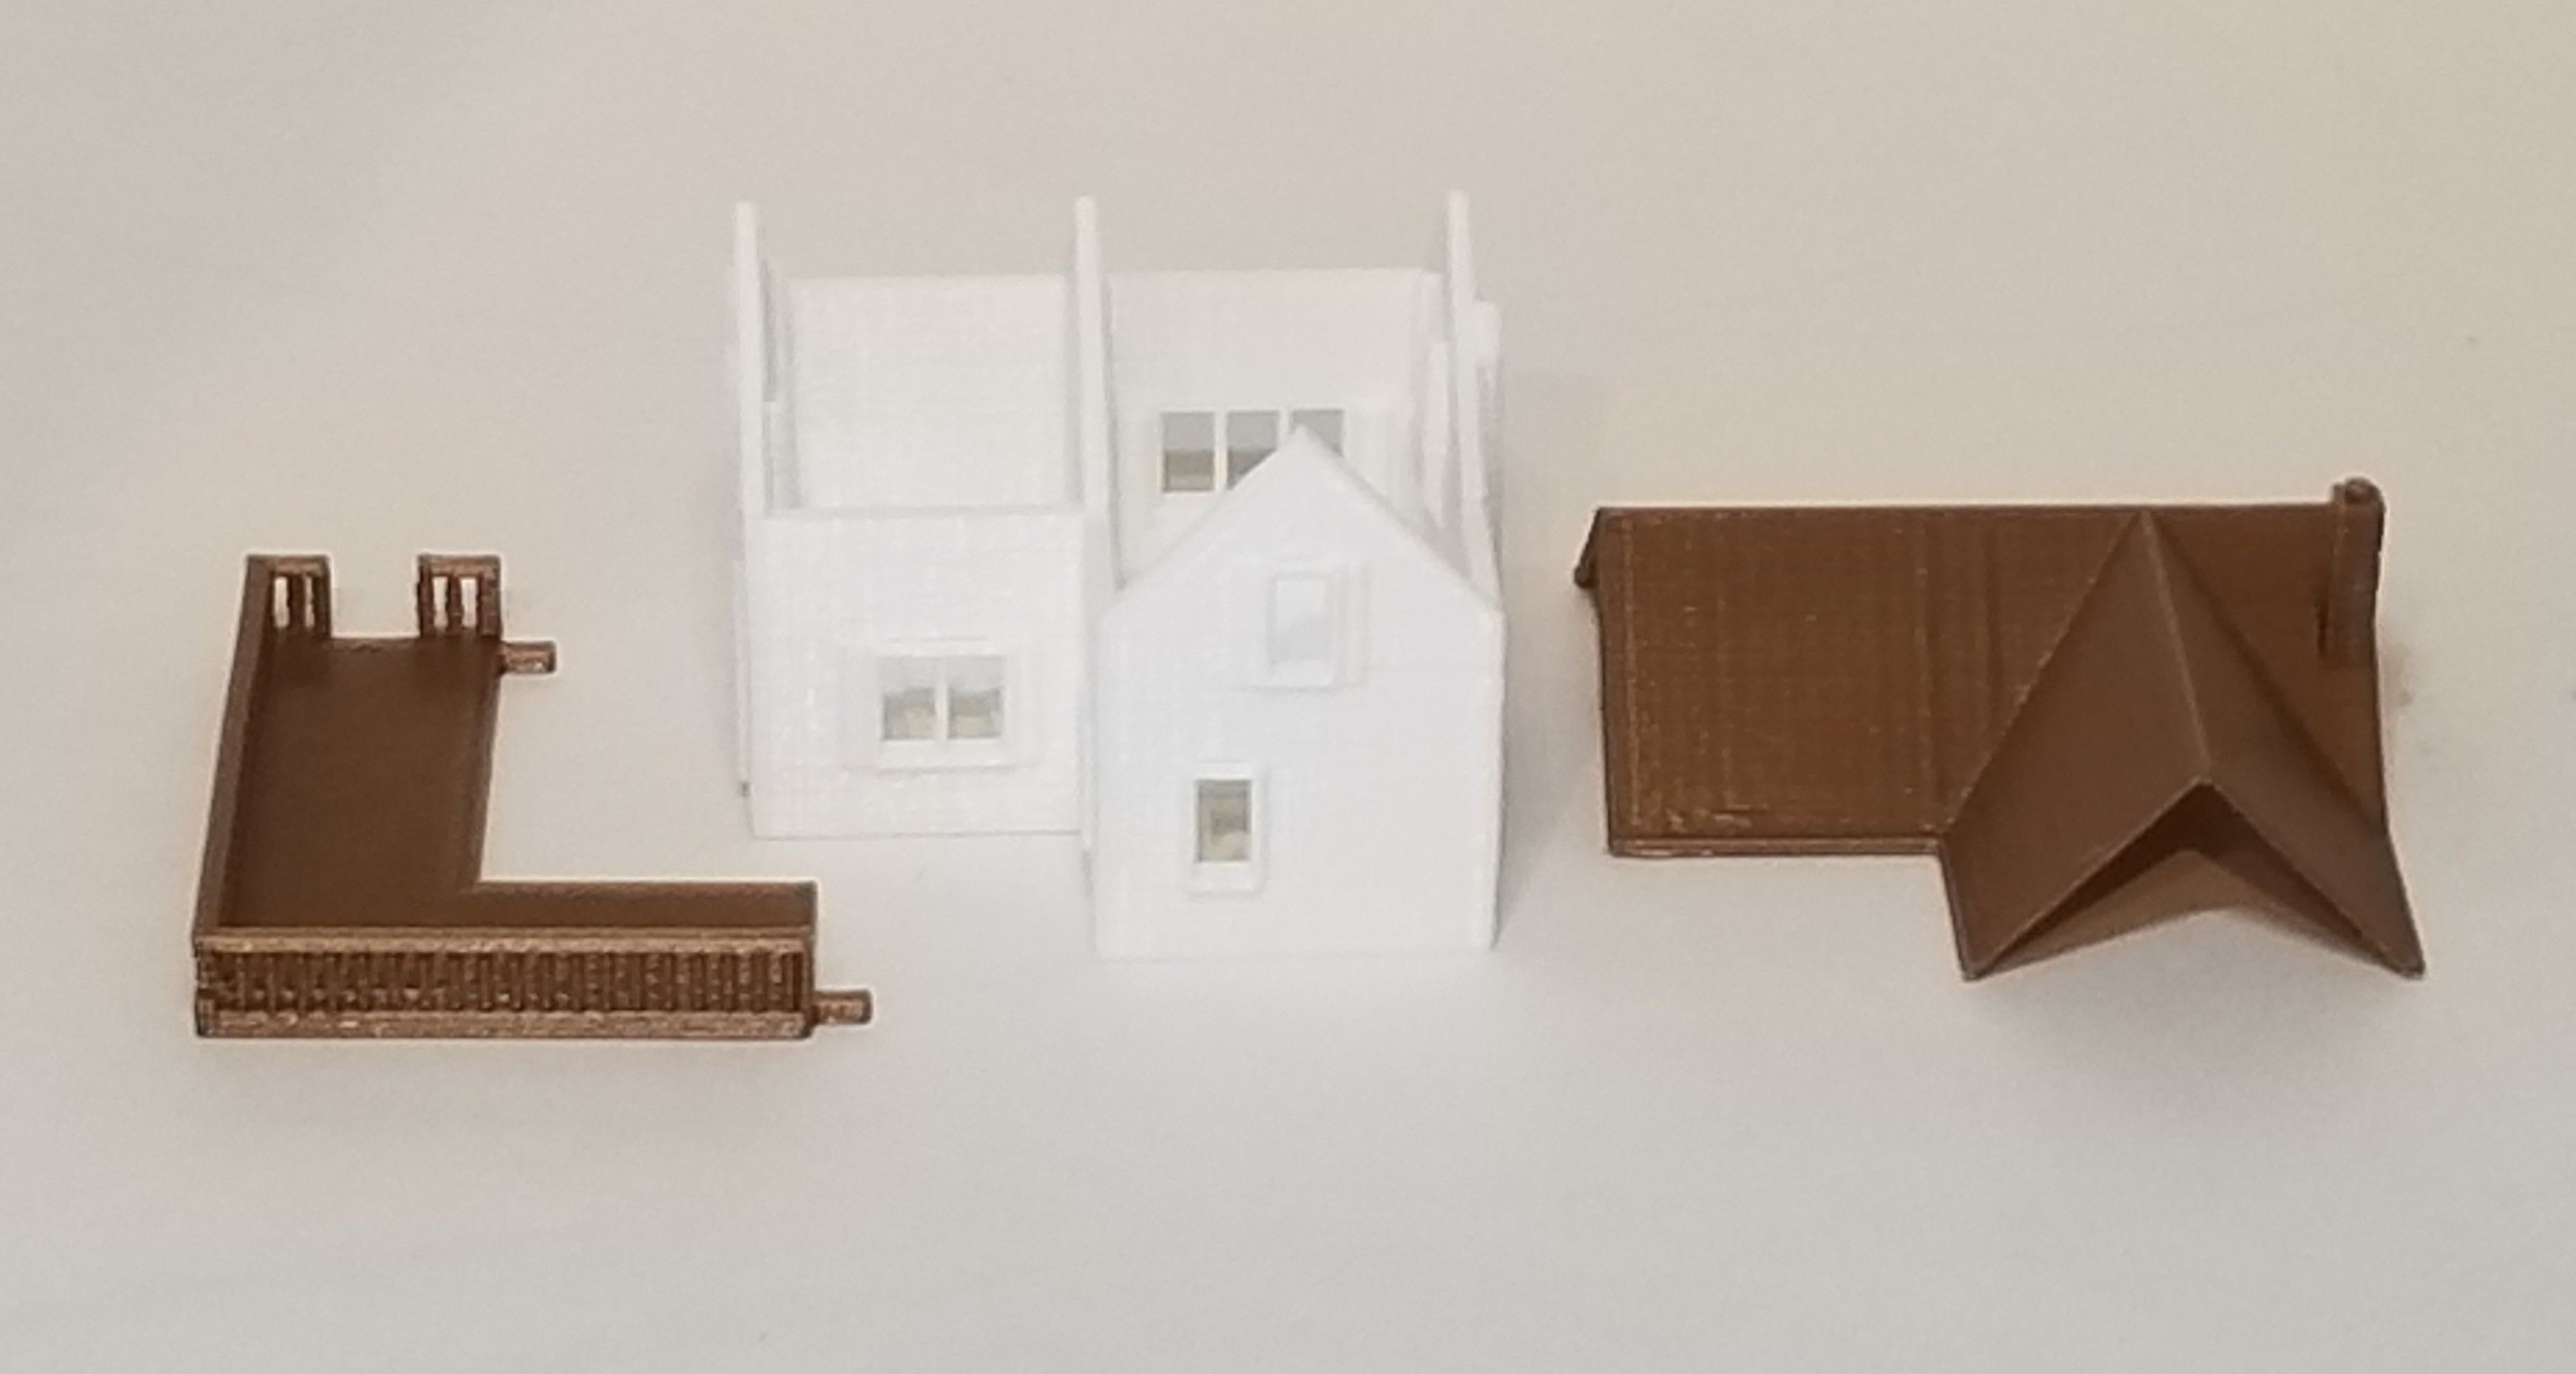 2019-02-26 11.04.04-2.jpg Fichier 3D PREMIUM N Scale Rural Town Petite maison (#2 sur 7)・Modèle à télécharger et à imprimer en 3D, MFouillard